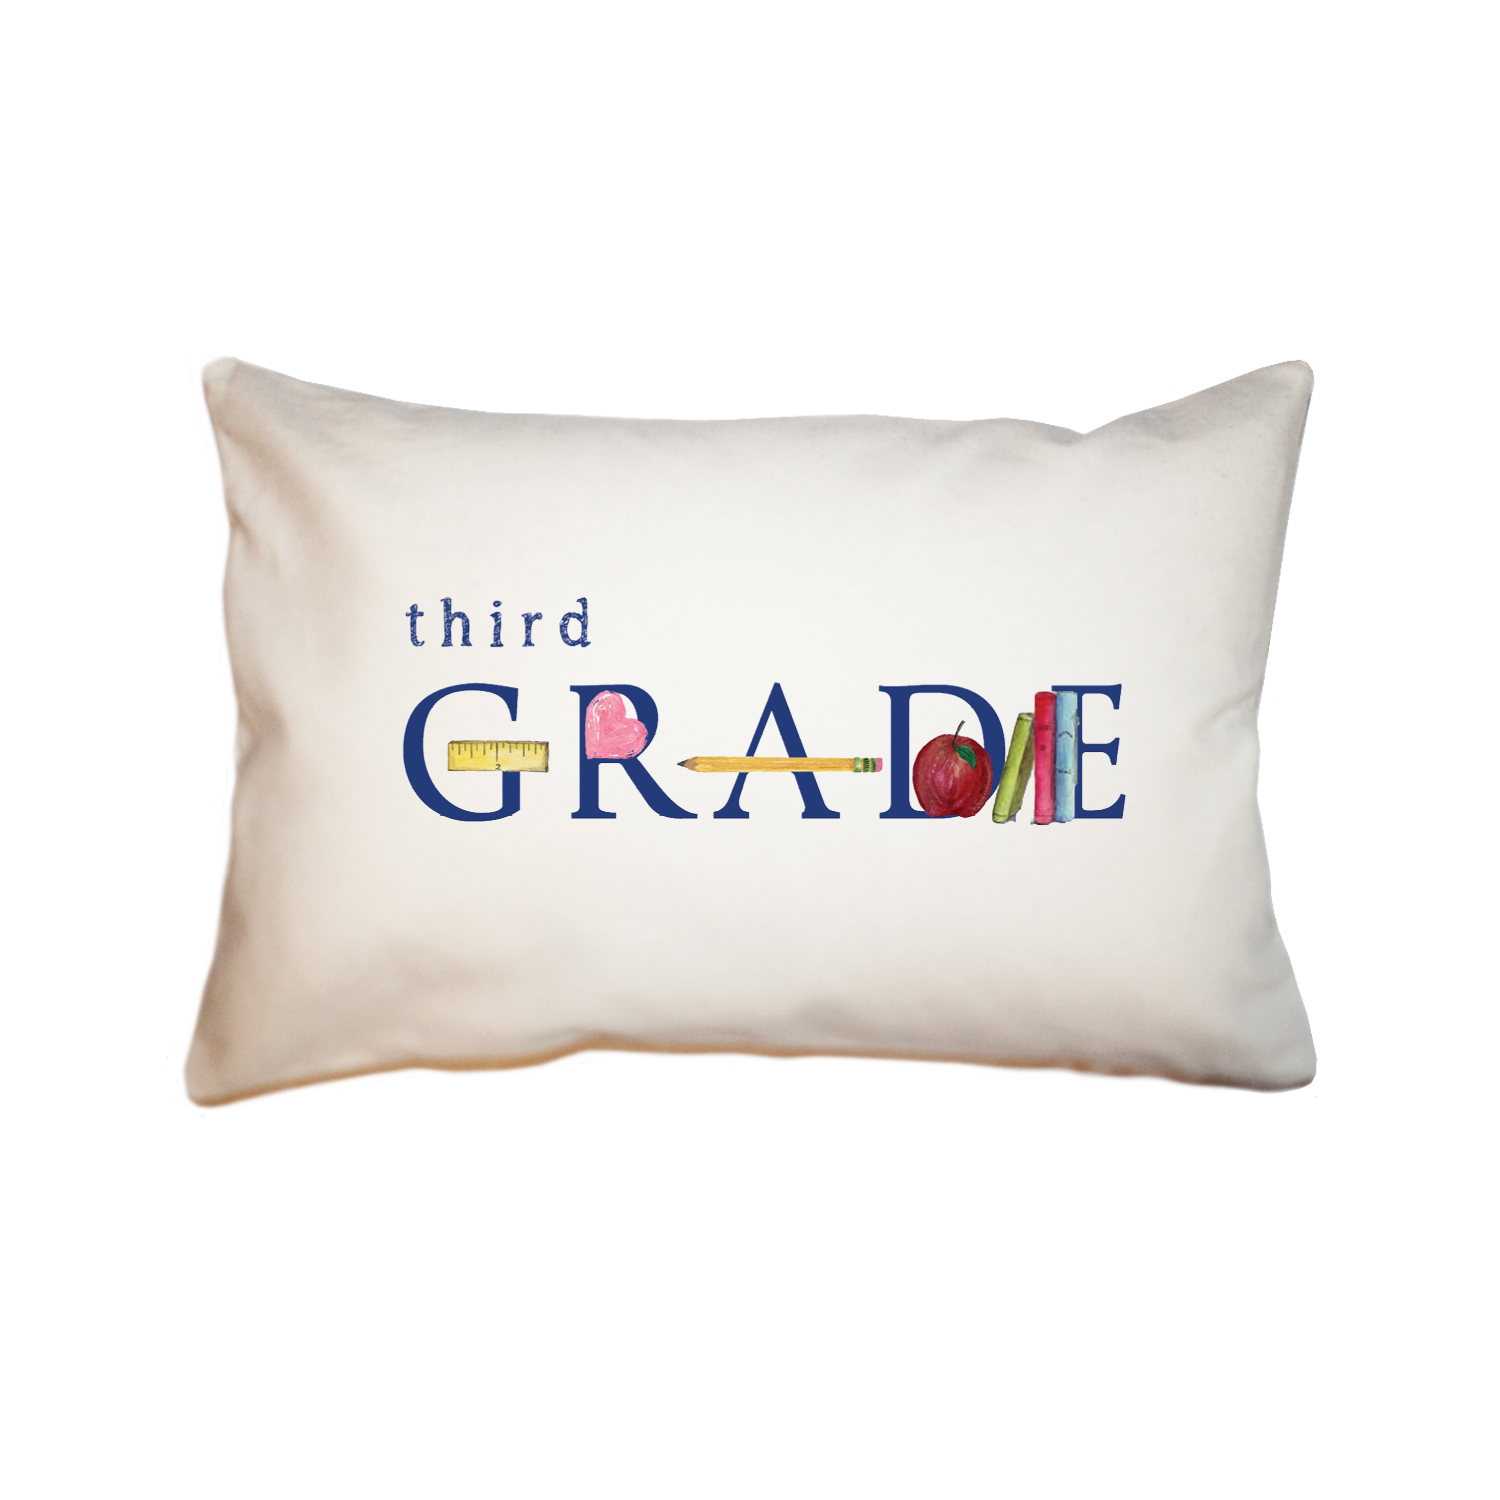 third grade large rectangle pillow